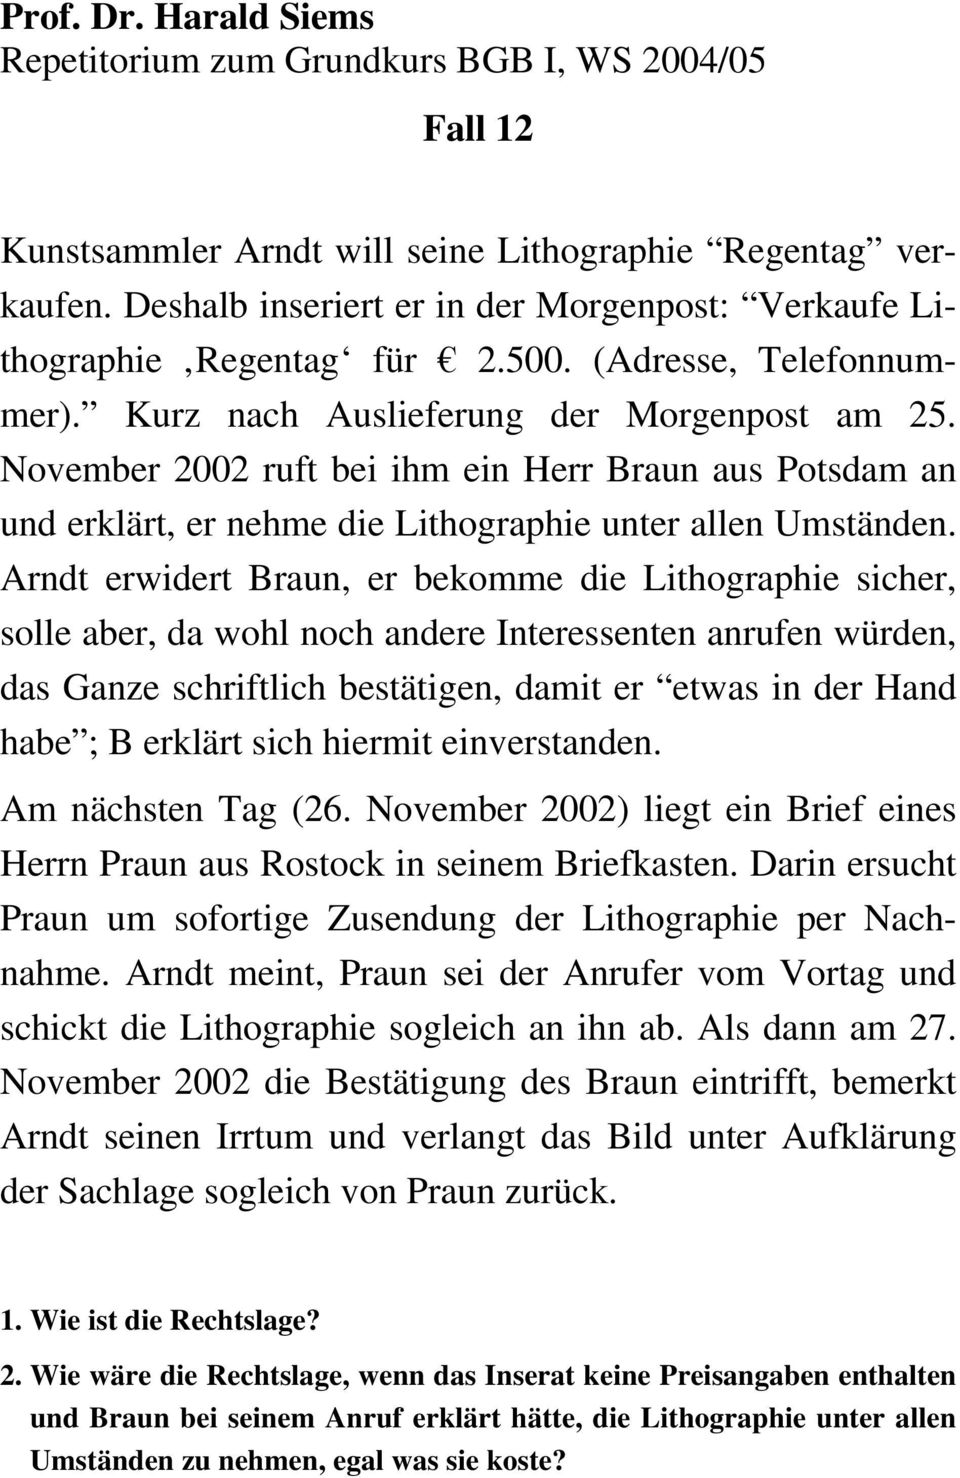 Arndt erwidert Braun, er bekomme die Lithographie sicher, solle aber, da wohl noch andere Interessenten anrufen würden, das Ganze schriftlich bestätigen, damit er etwas in der Hand habe ; B erklärt